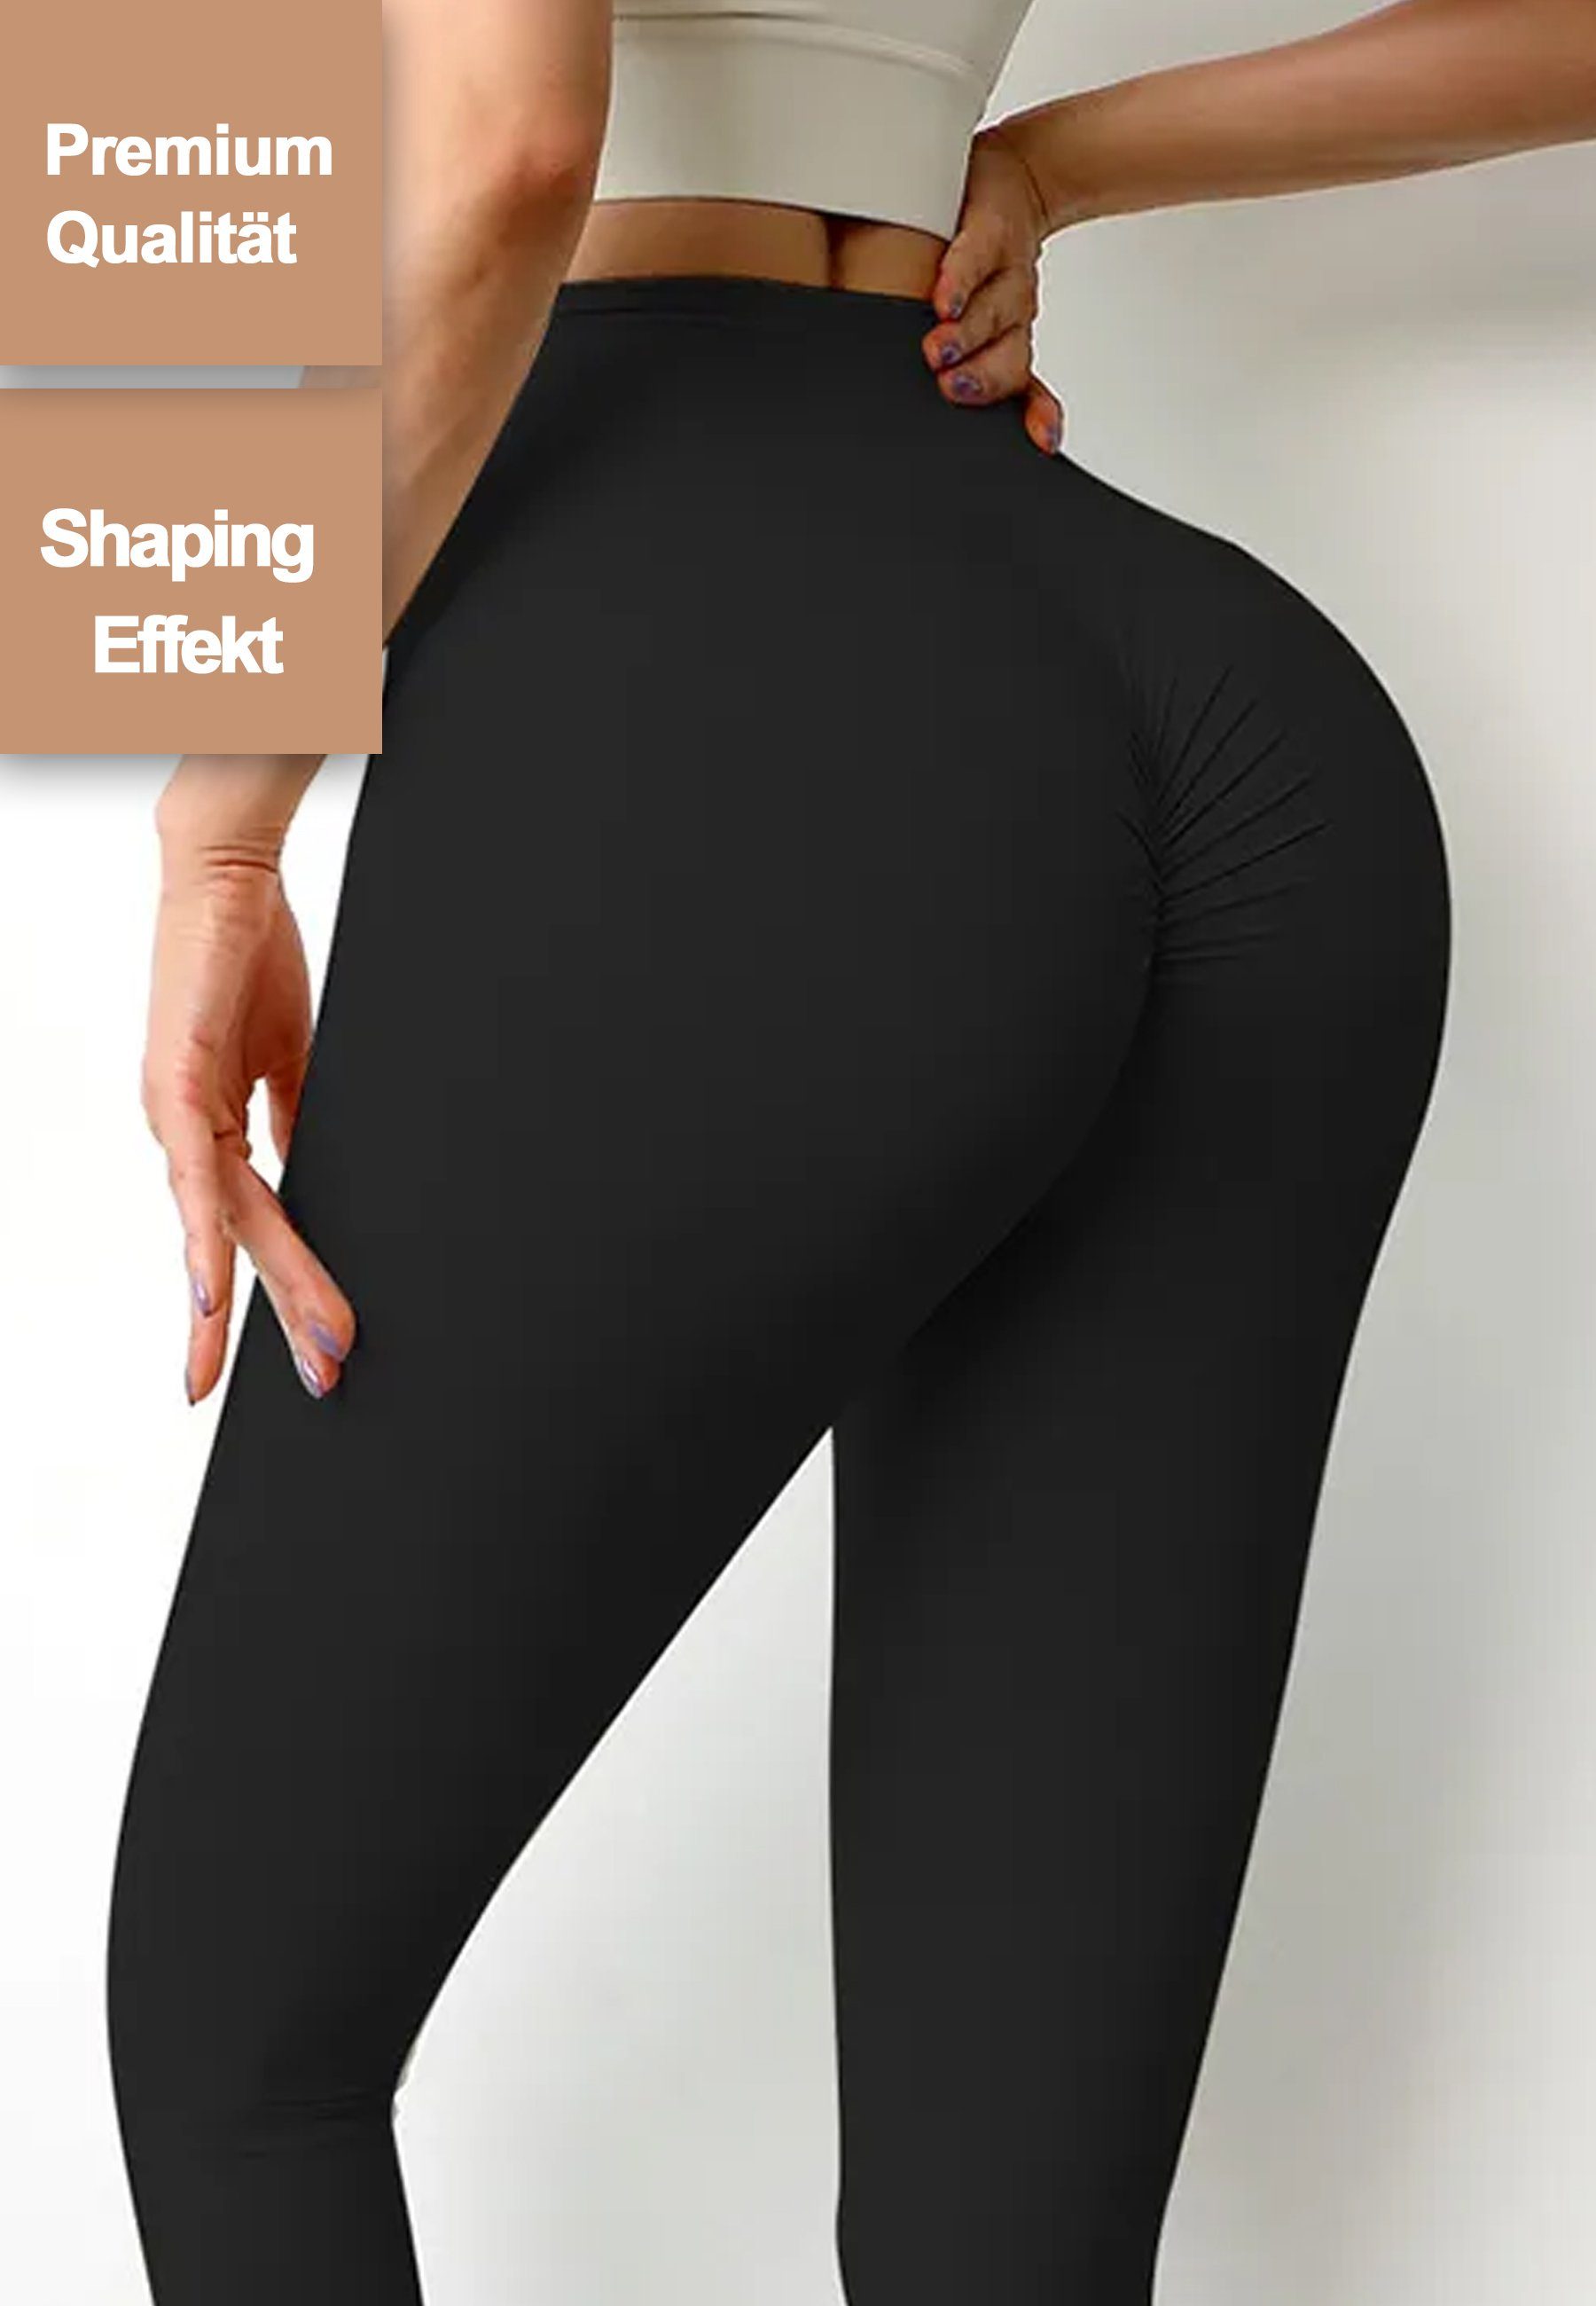 1 Topseller Schwarz Shaping Effekt für sexy Leggings Po einen knackigen &